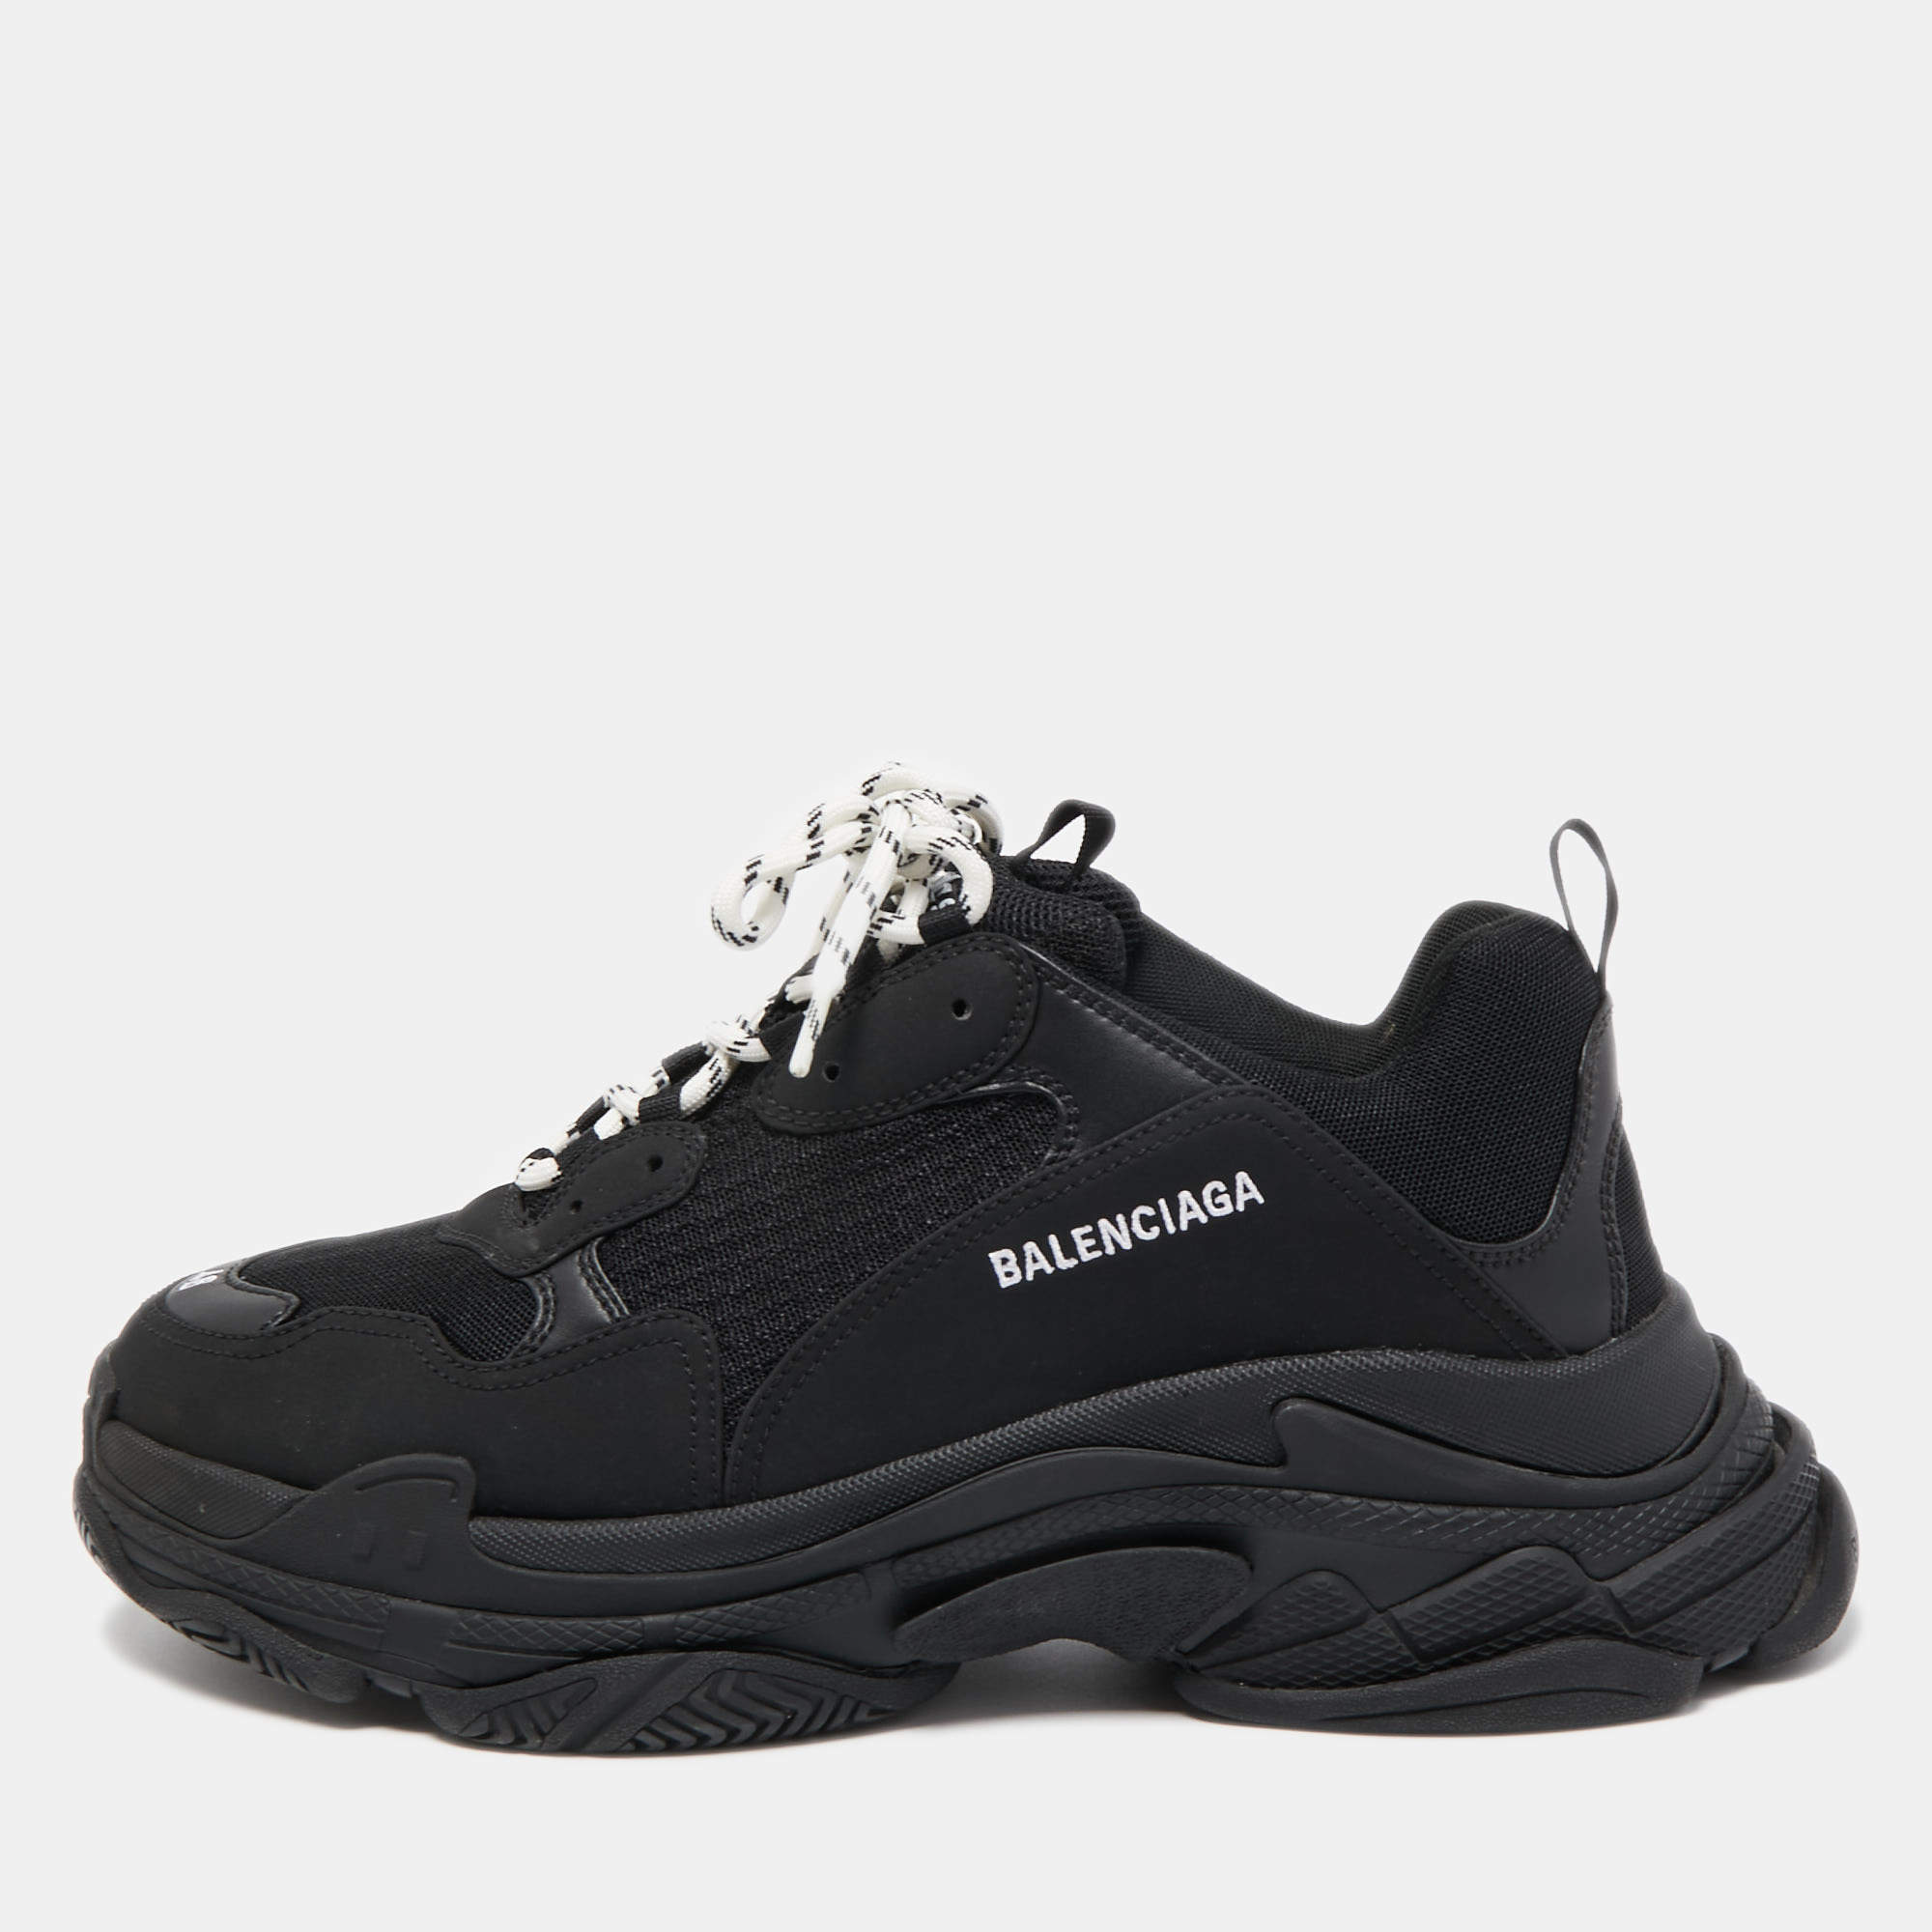 Men's Balenciaga Shoes